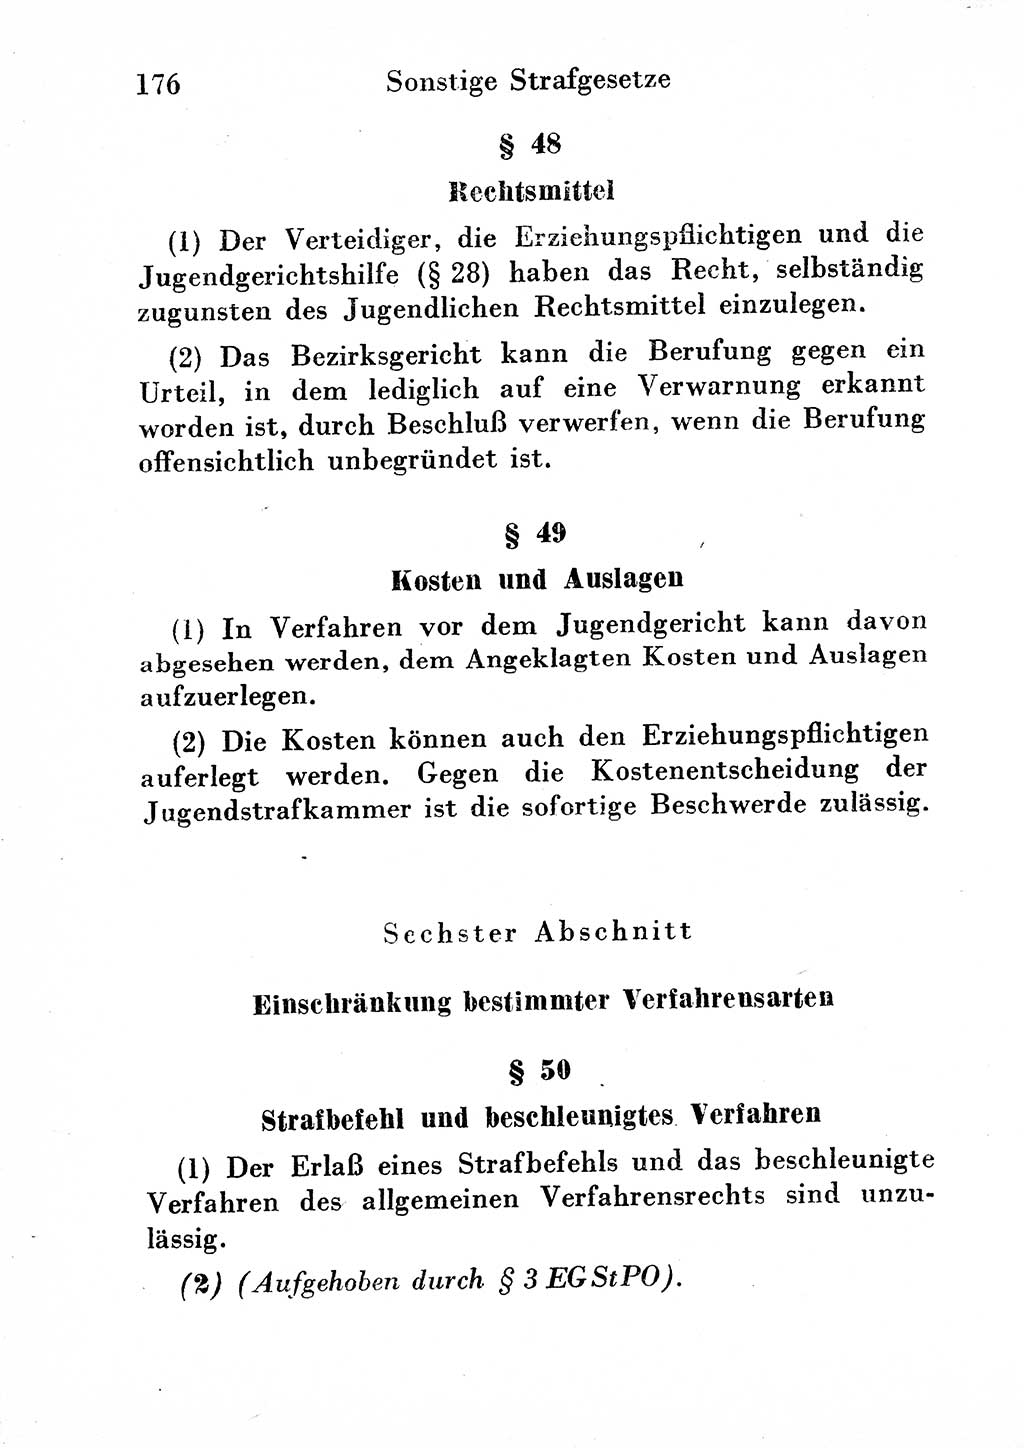 Strafgesetzbuch (StGB) und andere Strafgesetze [Deutsche Demokratische Republik (DDR)] 1954, Seite 176 (StGB Strafges. DDR 1954, S. 176)